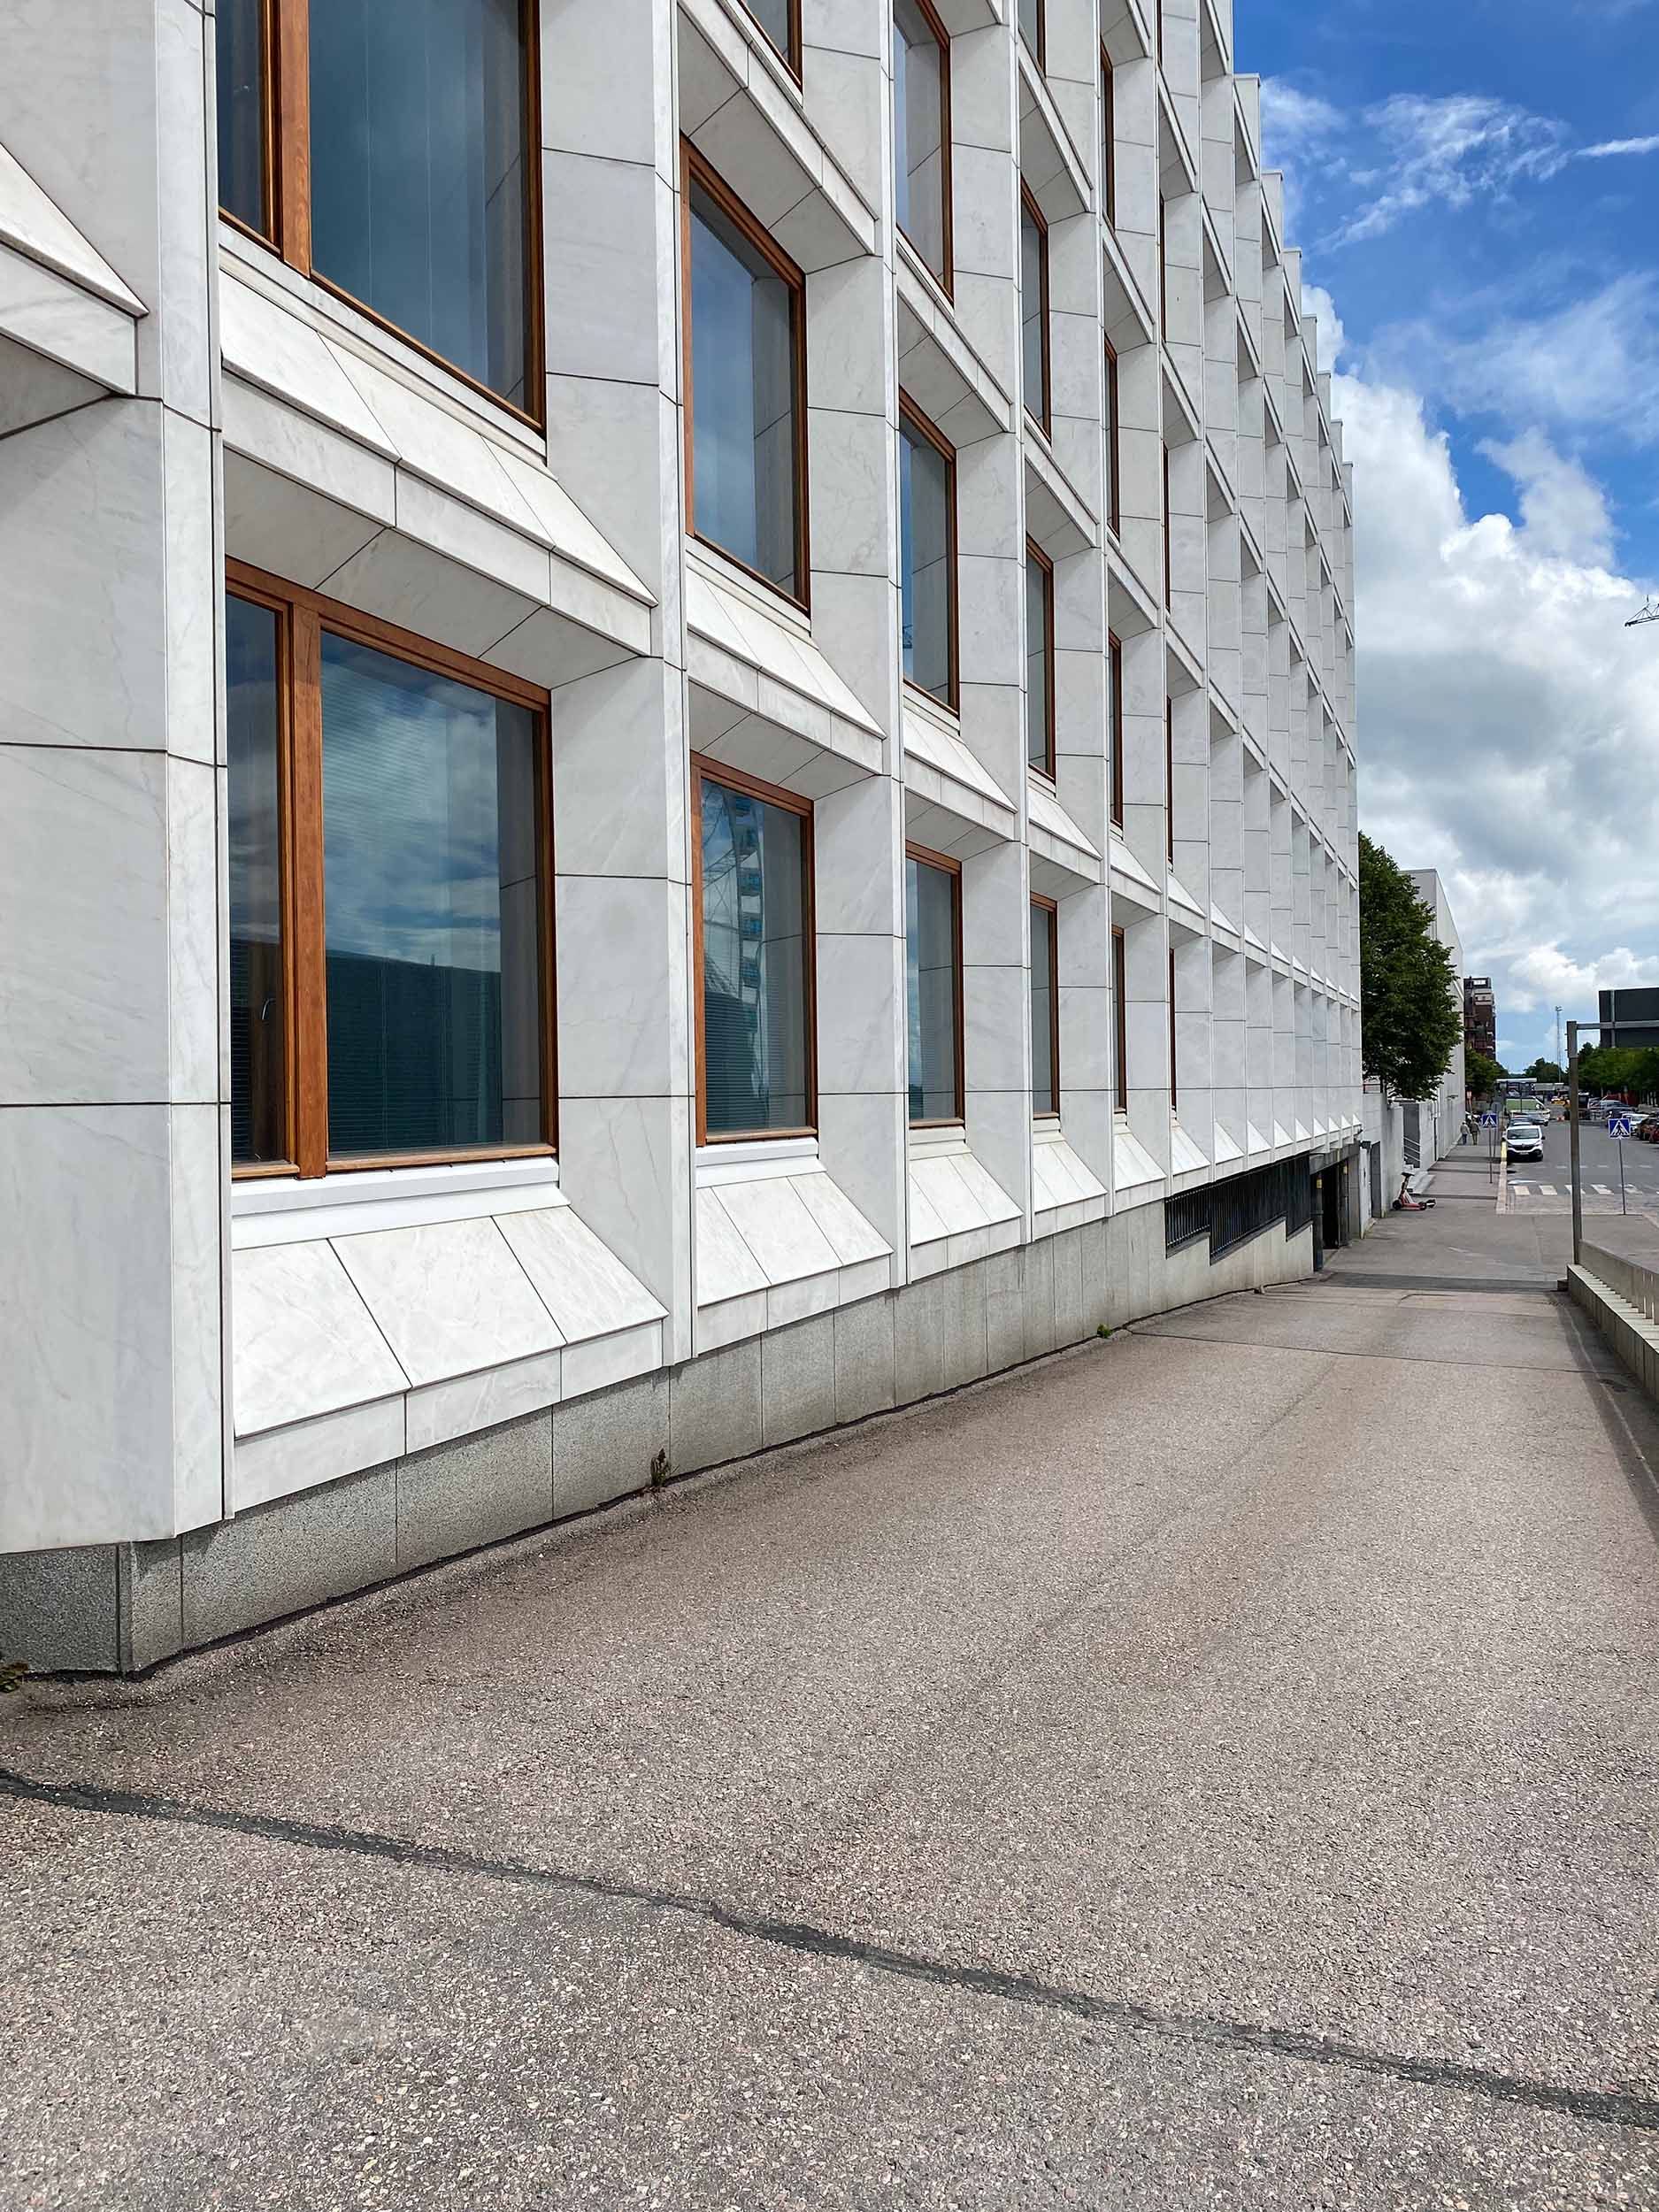 Das Bauwerk entstand 1962 nach einem Entwurf von Alvar Aalto.